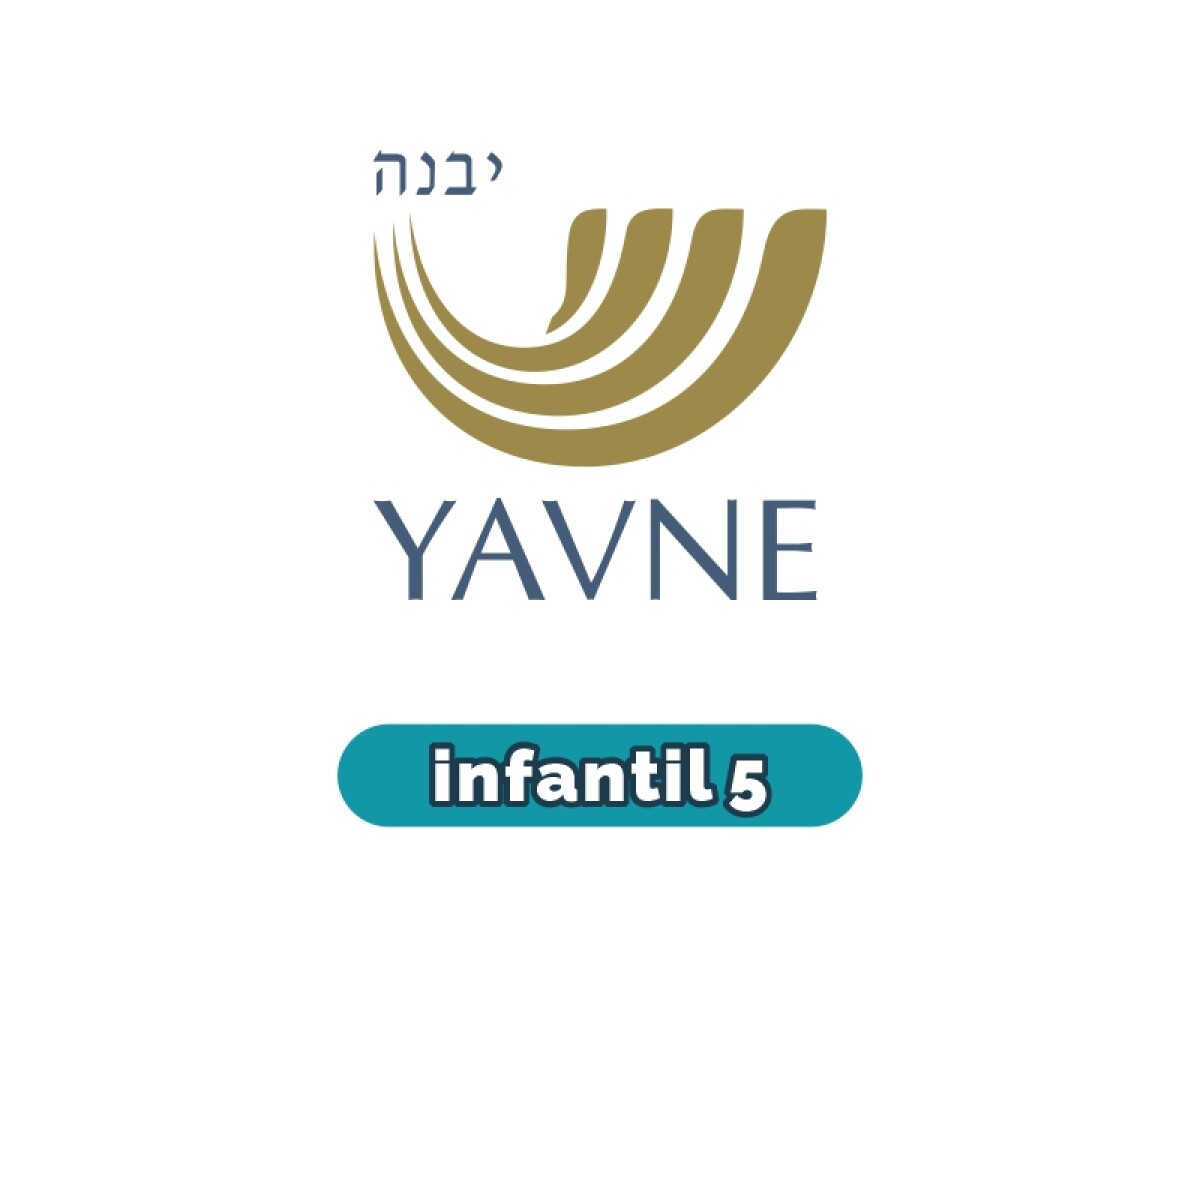 Lista de materiales - Infantil 5 YAVNE 